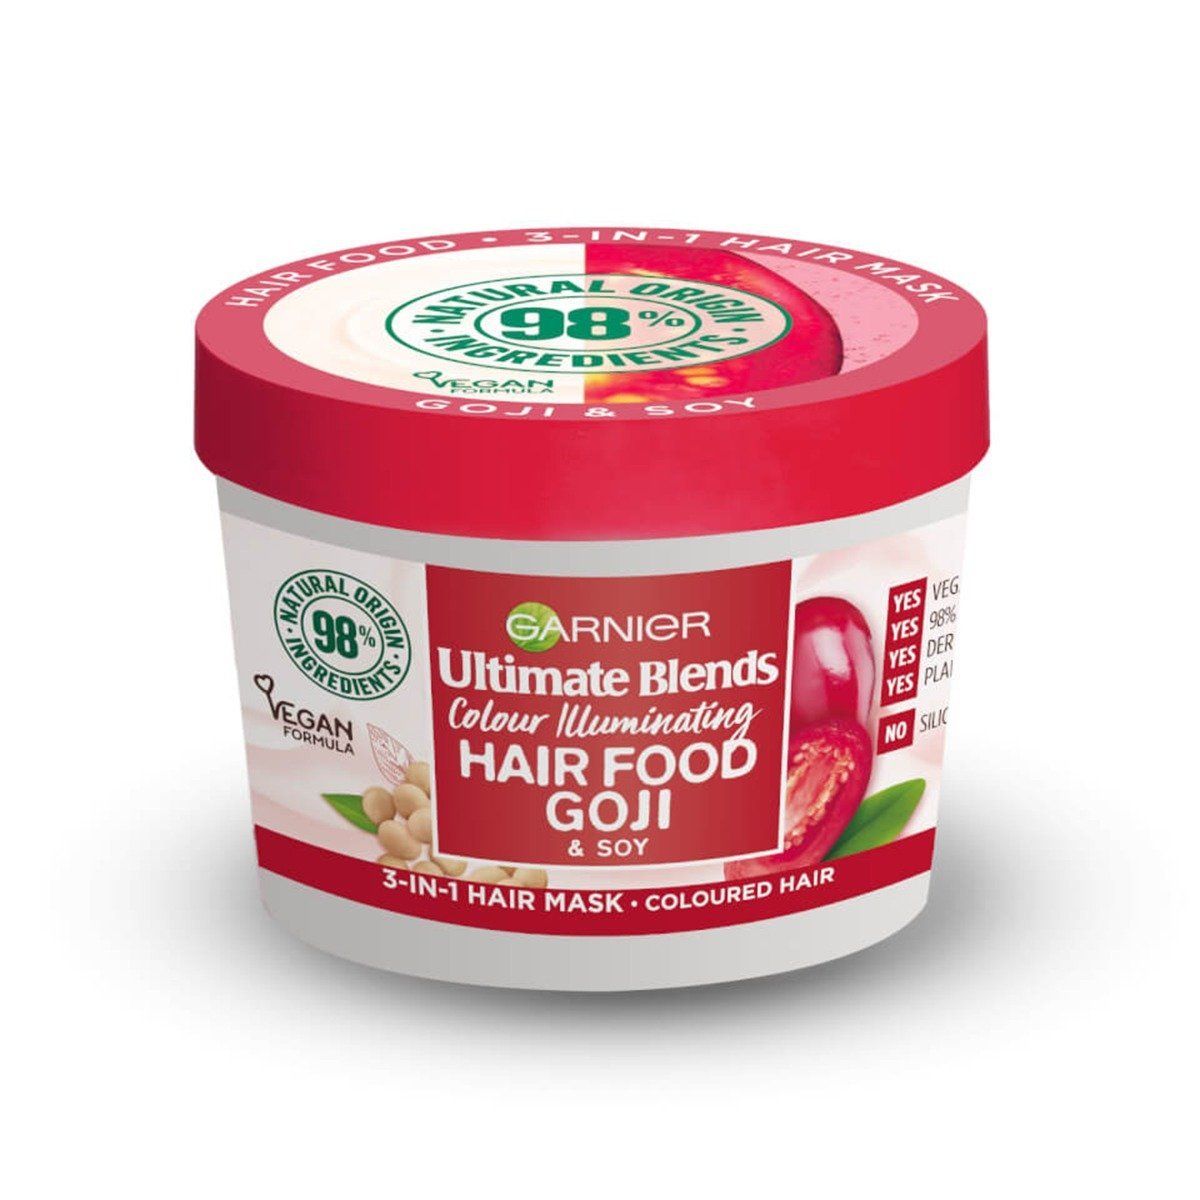 Garnier Ultimate Blends Hair Food Hair Food Goji & Soy Hair Mask 390ml